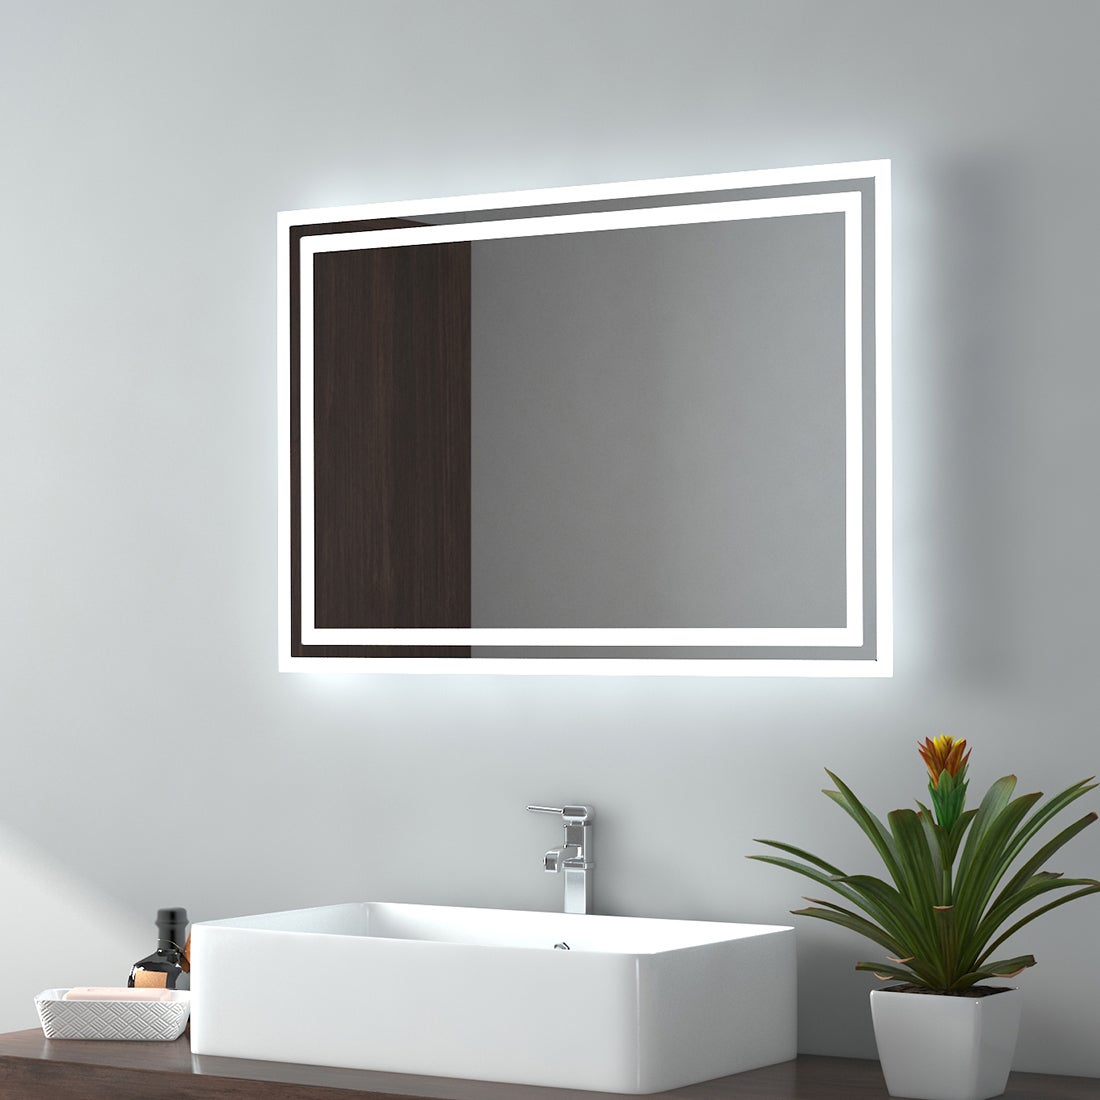 EMKE Badspiegel LED IP44 Wasserdicht Wandspiegel, 70x50cm, Kaltweißes/Warmweißes Licht, Knopfschalter, Beschlagfrei